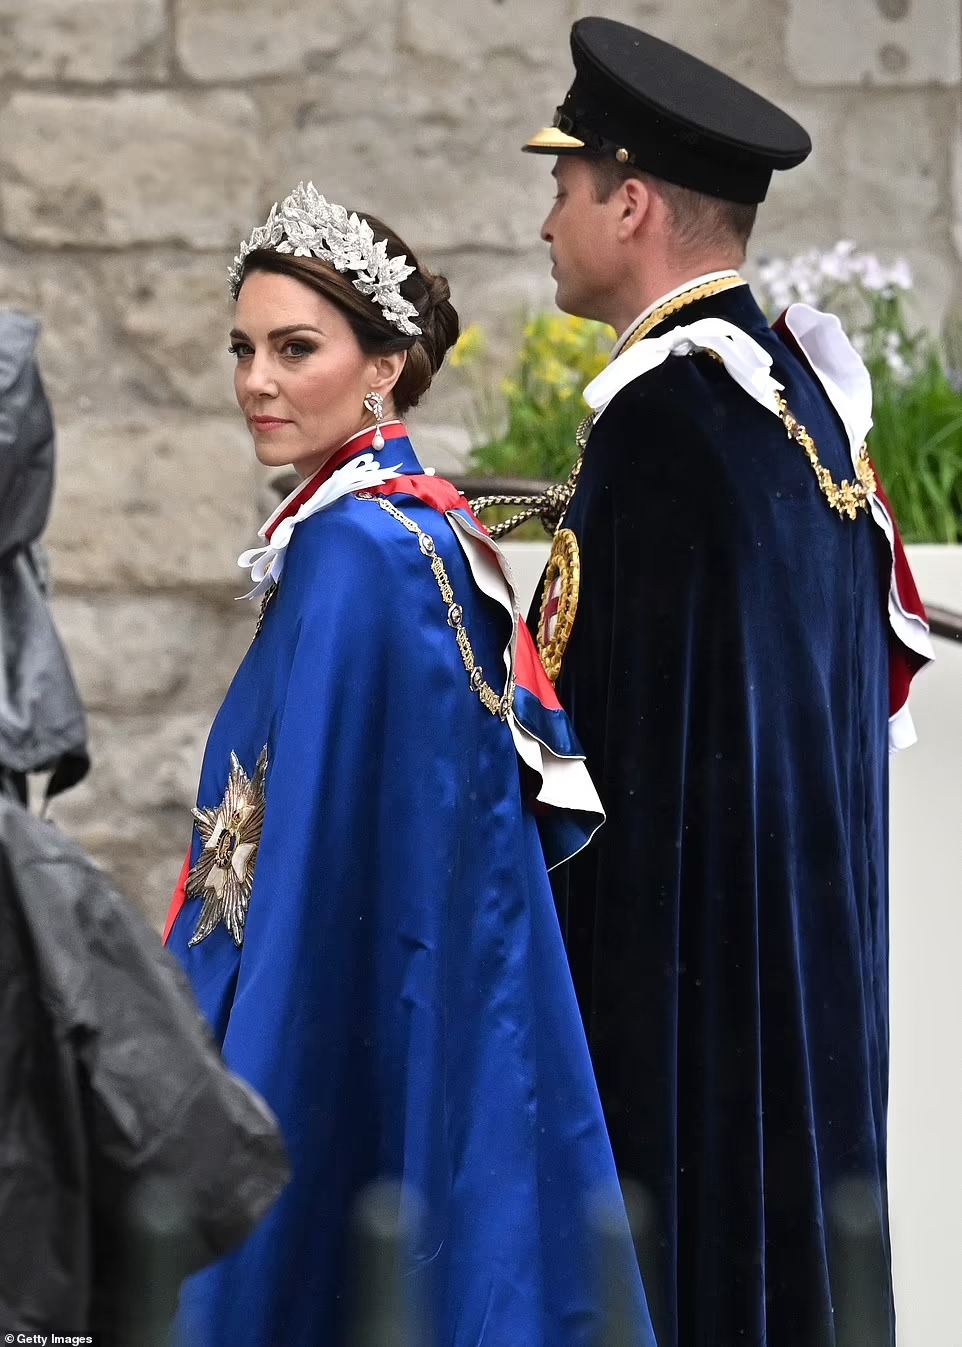 Vương phi Kate rạng rỡ nổi bật trong Lễ đăng quang của Vua Charles, dũng cảm phá lệ Vương thất và tinh tế thể hiện lòng tôn kính với cả mẹ chồng cùng bà nội  - Ảnh 5.